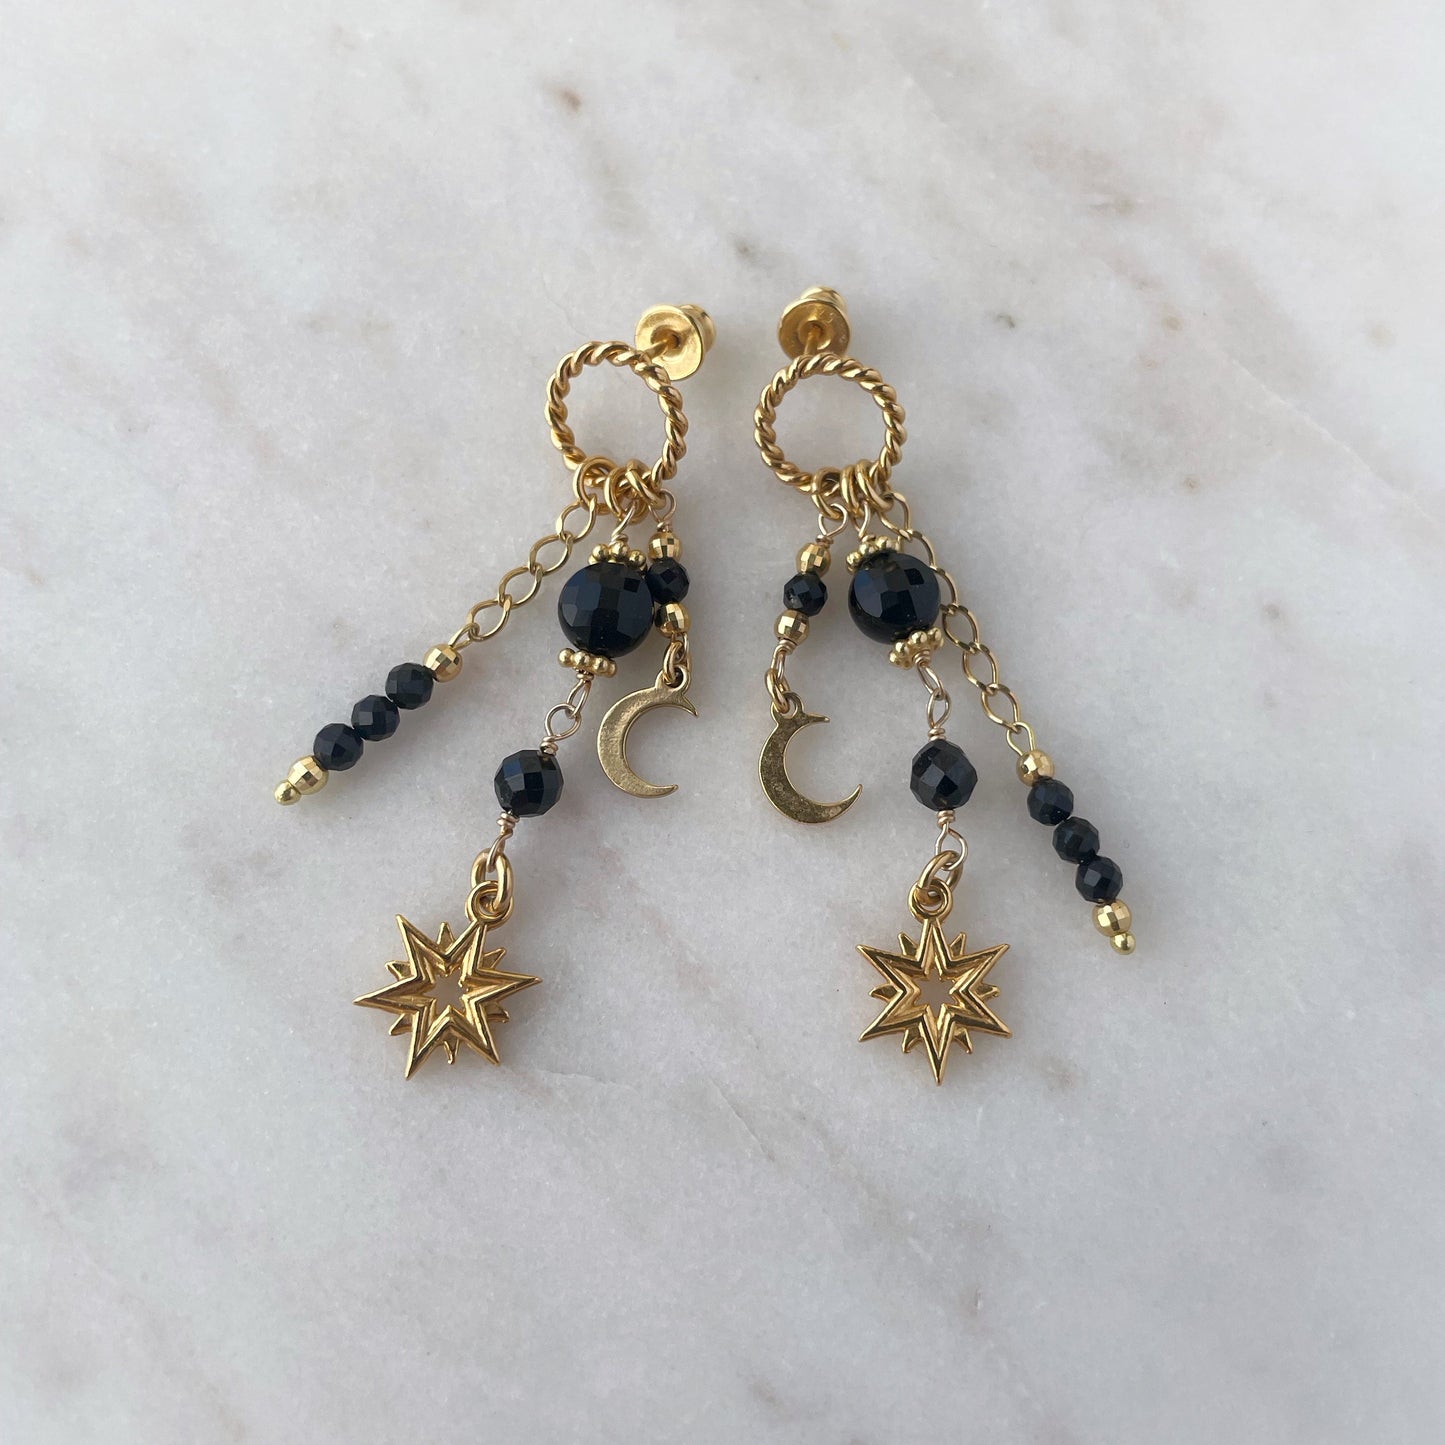 Nisha earrings